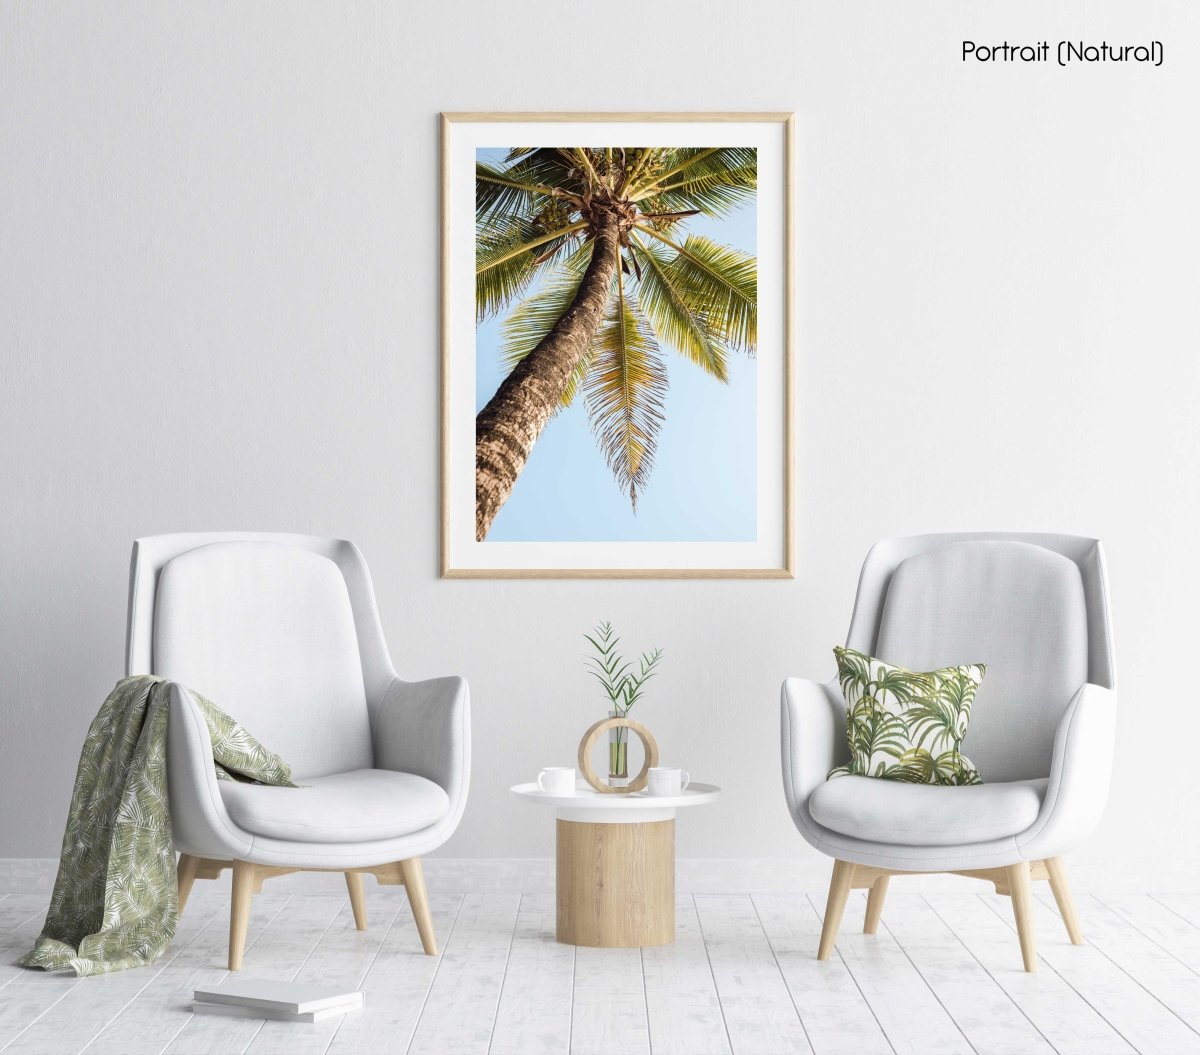 One palm tree on malindi beach in kenya in a natural fine art frame